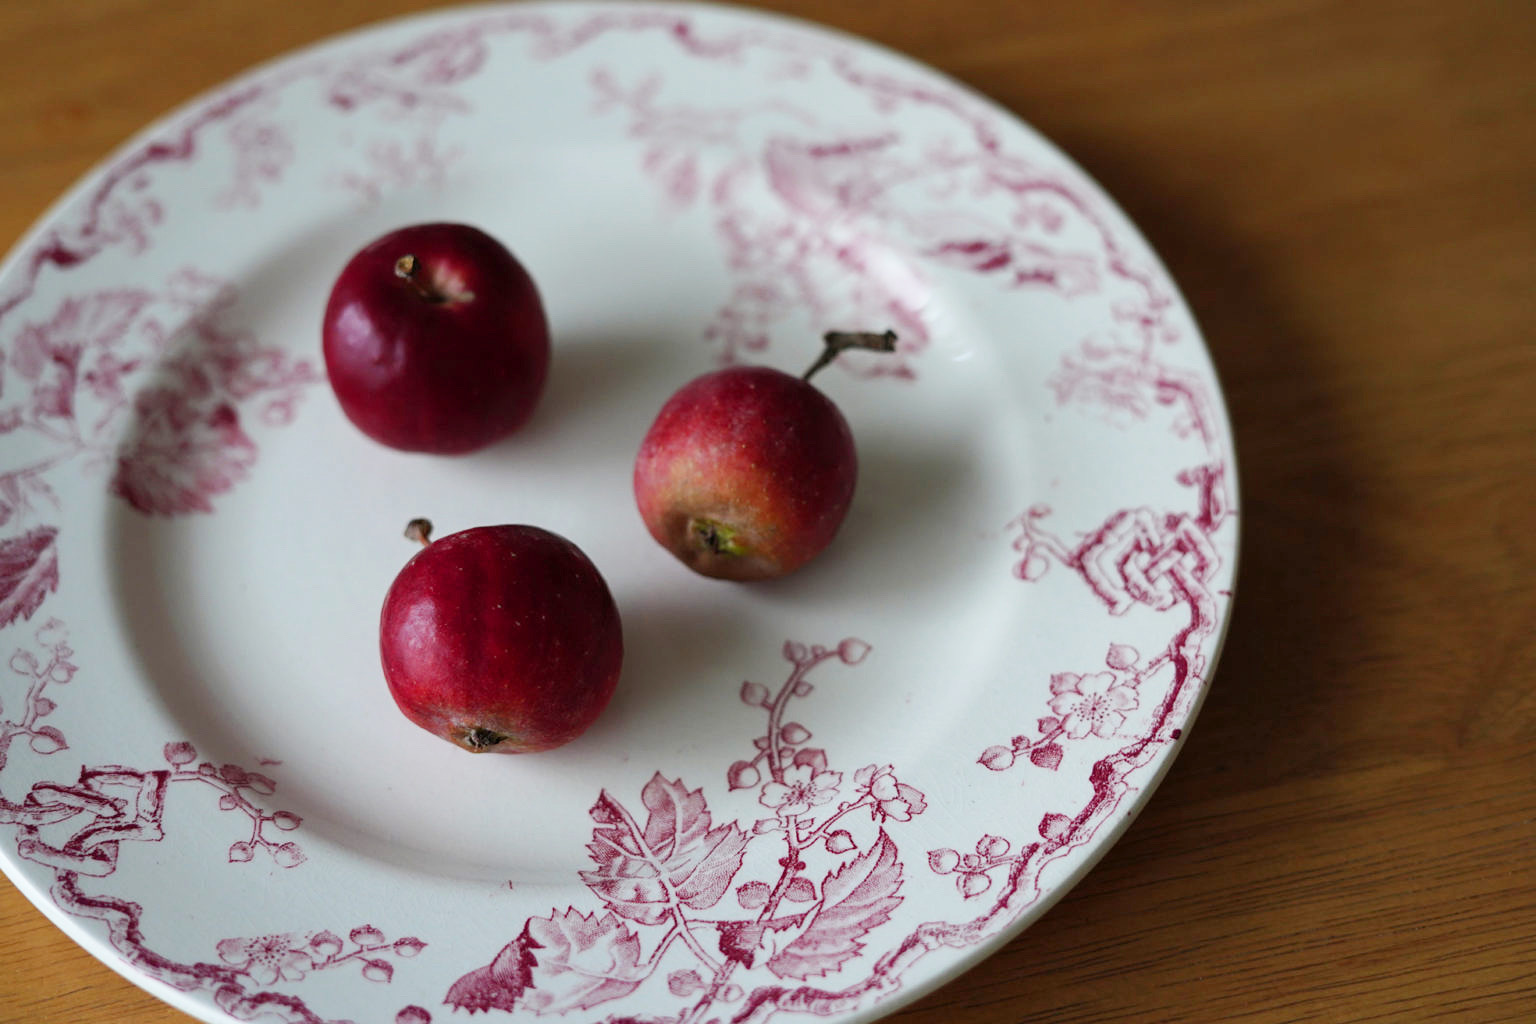 ロビネペタルで手に入れた小さなリンゴの写真撮影用の小道具